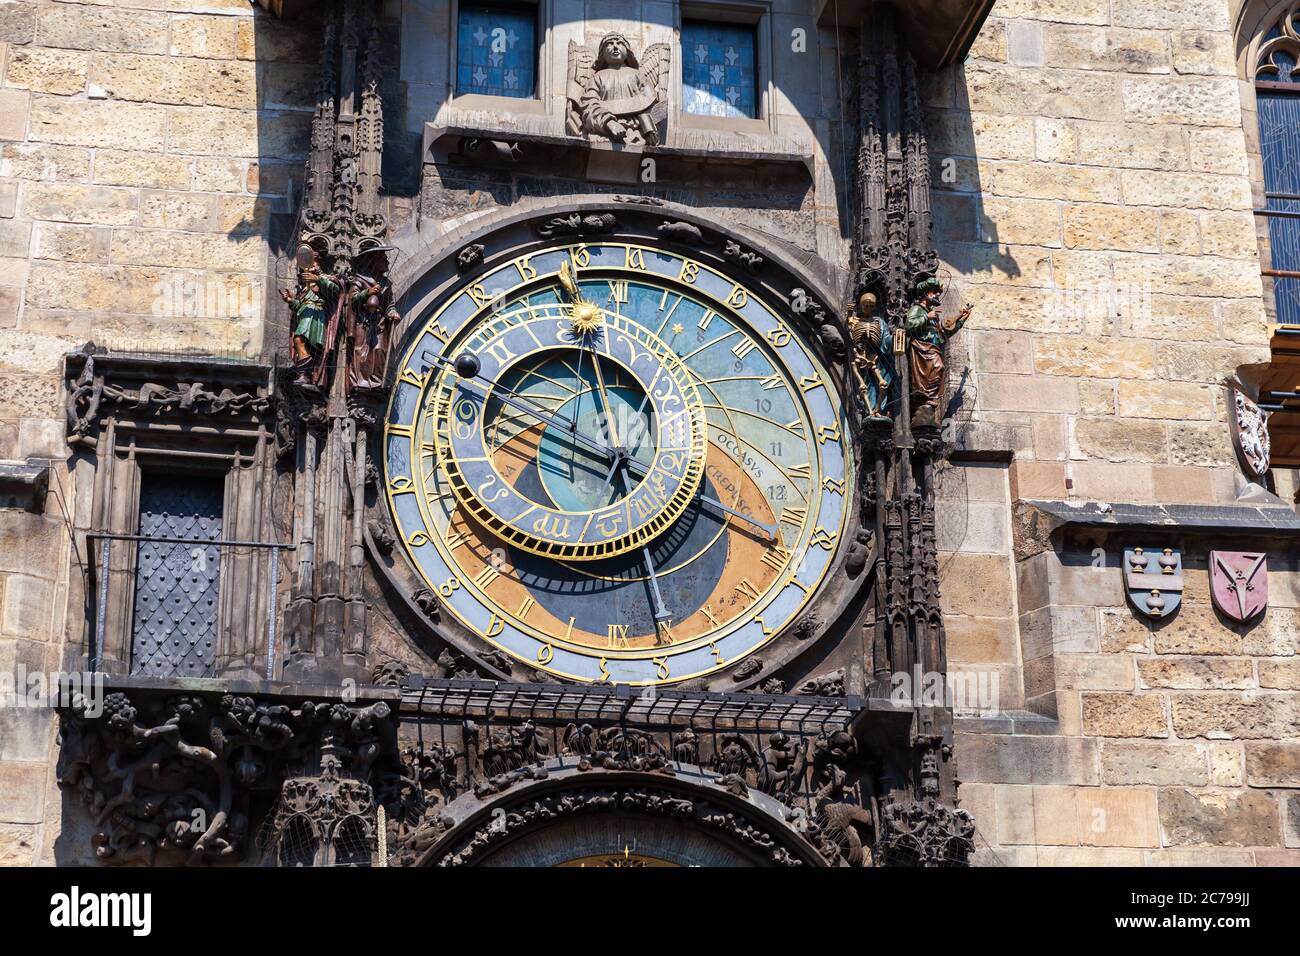 Die Prager Astronomische Uhr oder Prag Orloj. Es ist eine mittelalterliche astronomische Uhr in Prag, der Hauptstadt der Tschechischen Republik Stockfoto